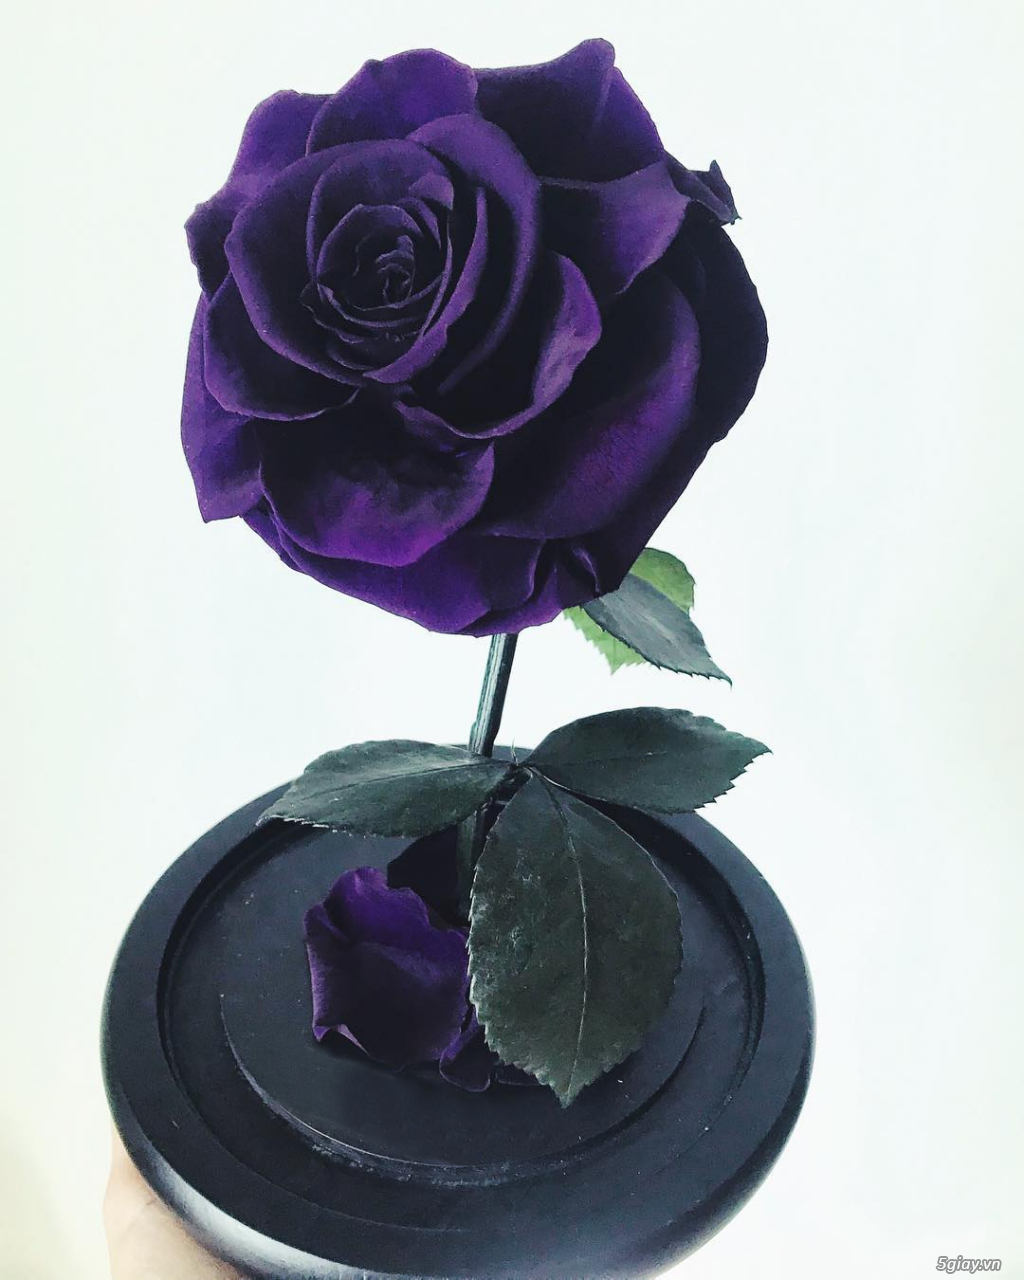 HCM - Hoa hồng vĩnh cữu đặt trong lọ kính cực kỳ sang trọng